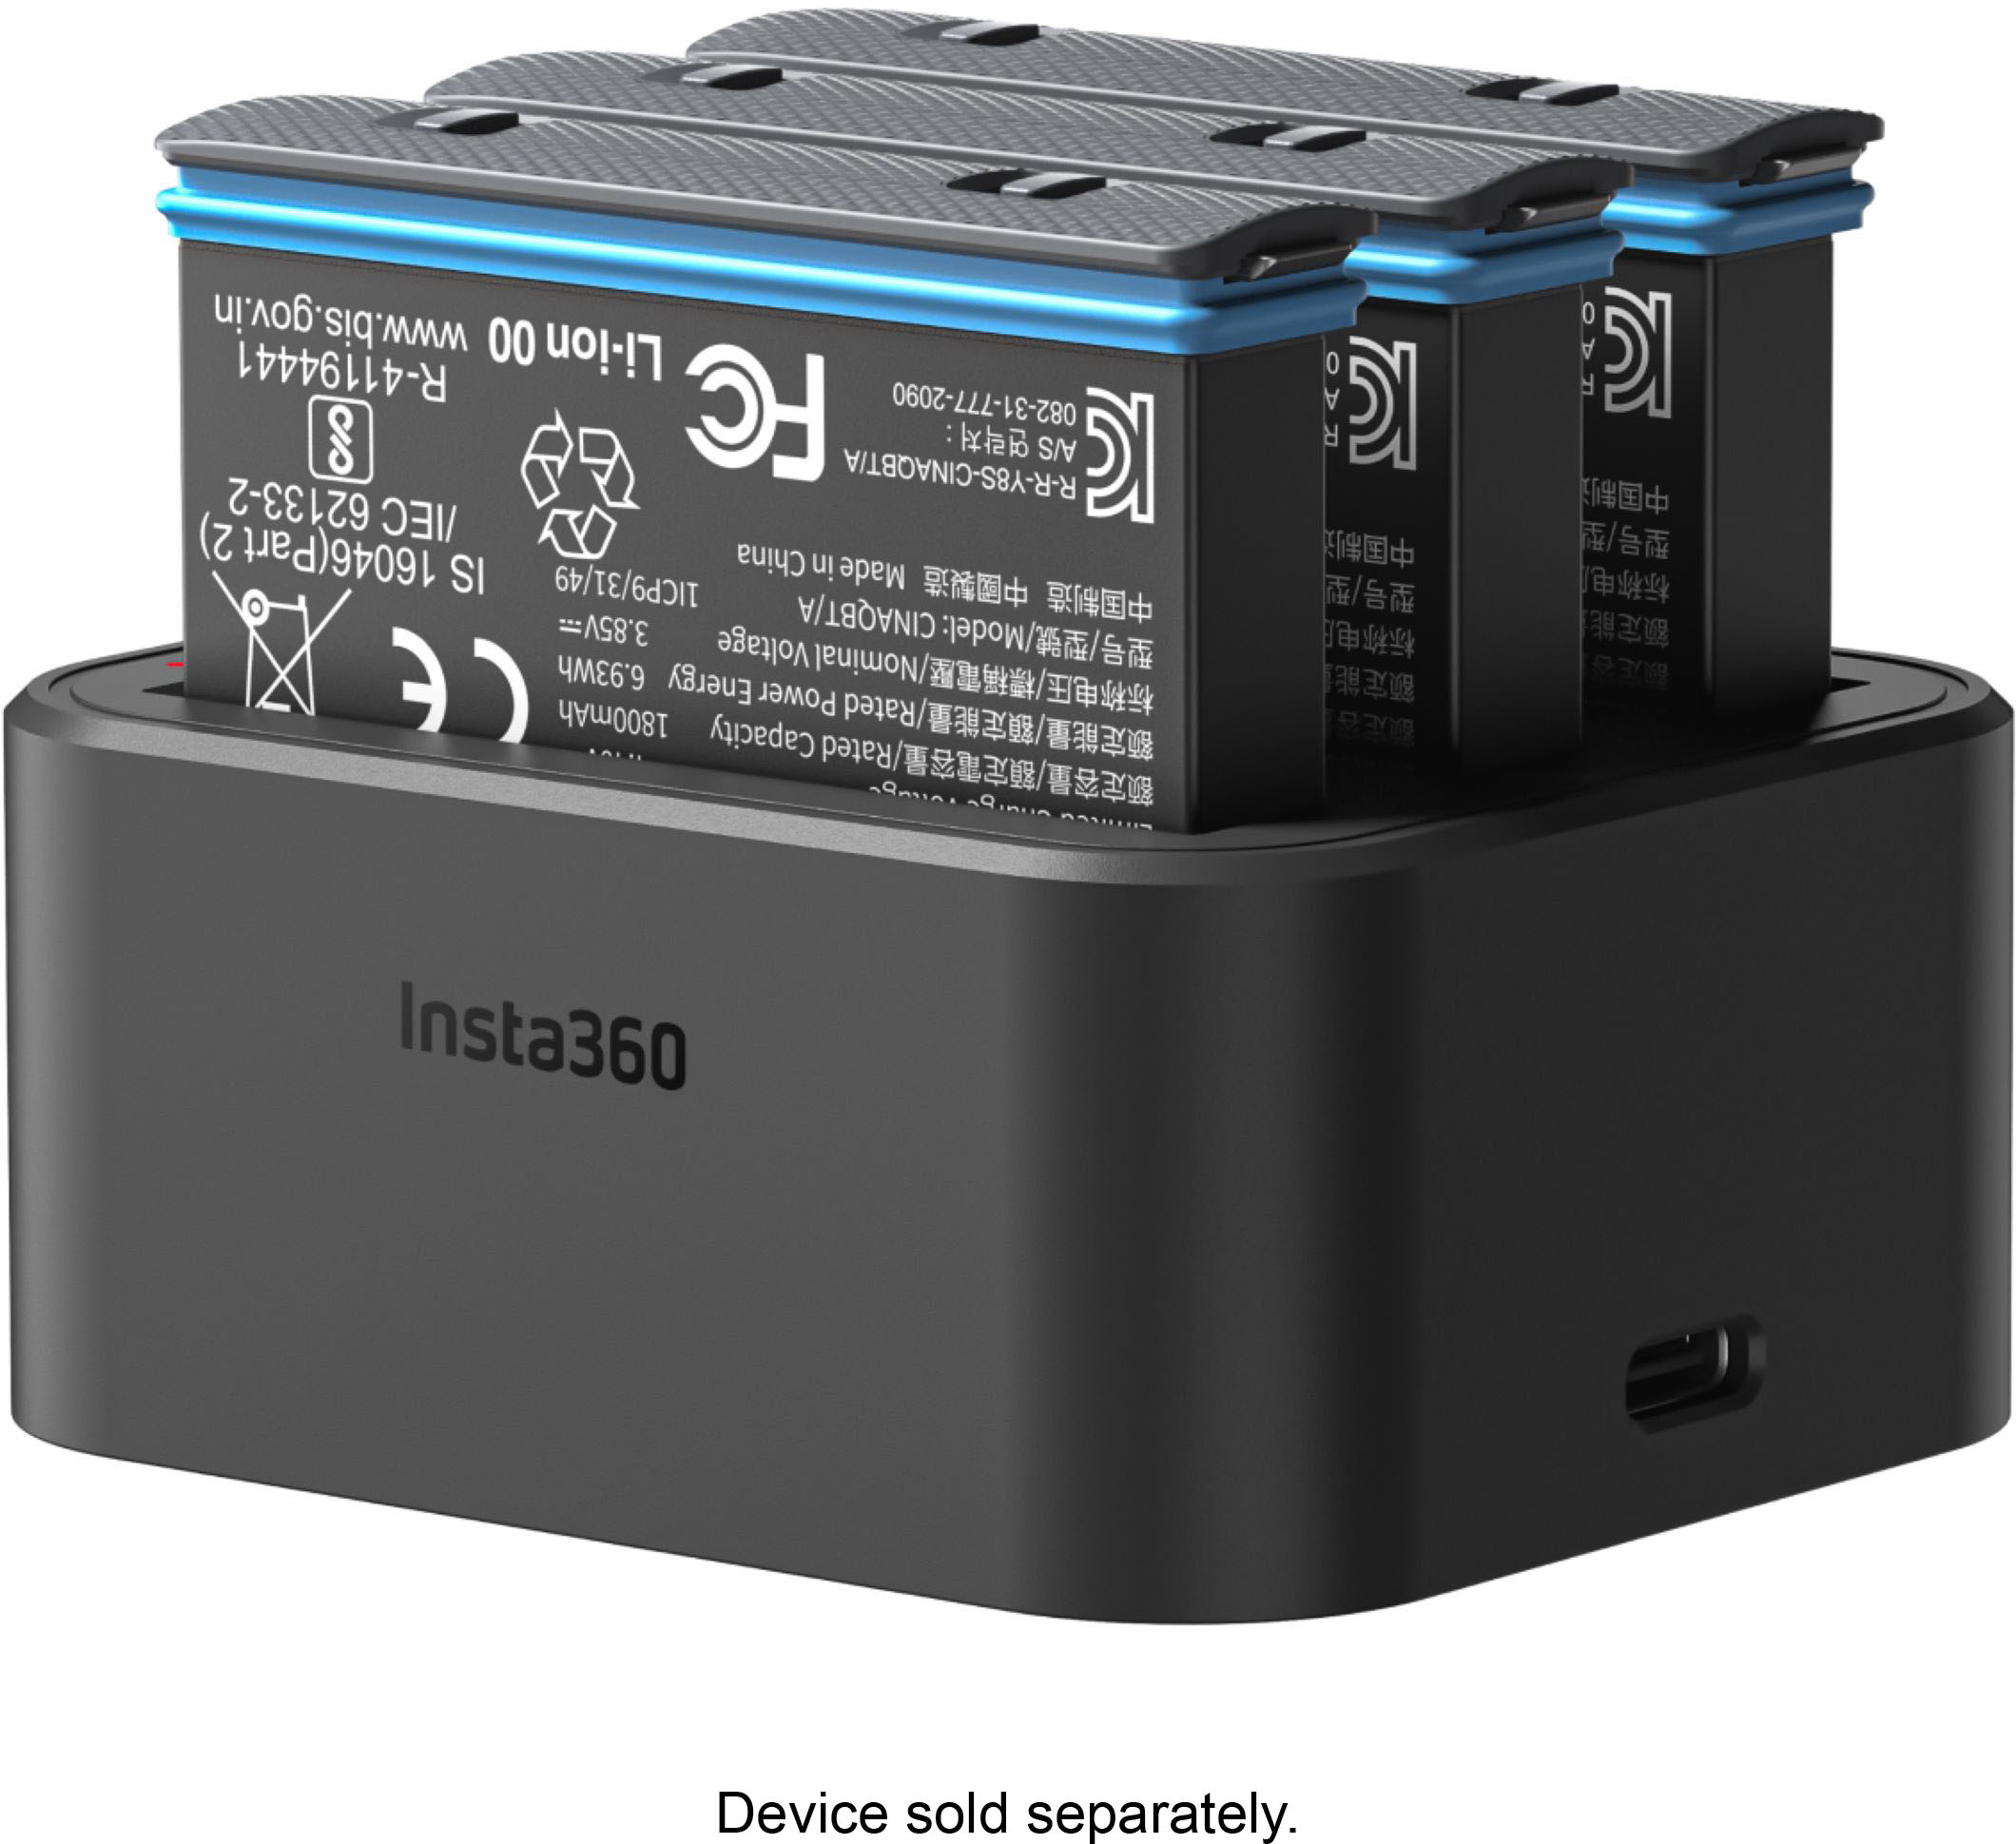 Pack: Cargador de baterías triple LED + 3 Baterías para Insta360 X3 – ISO64